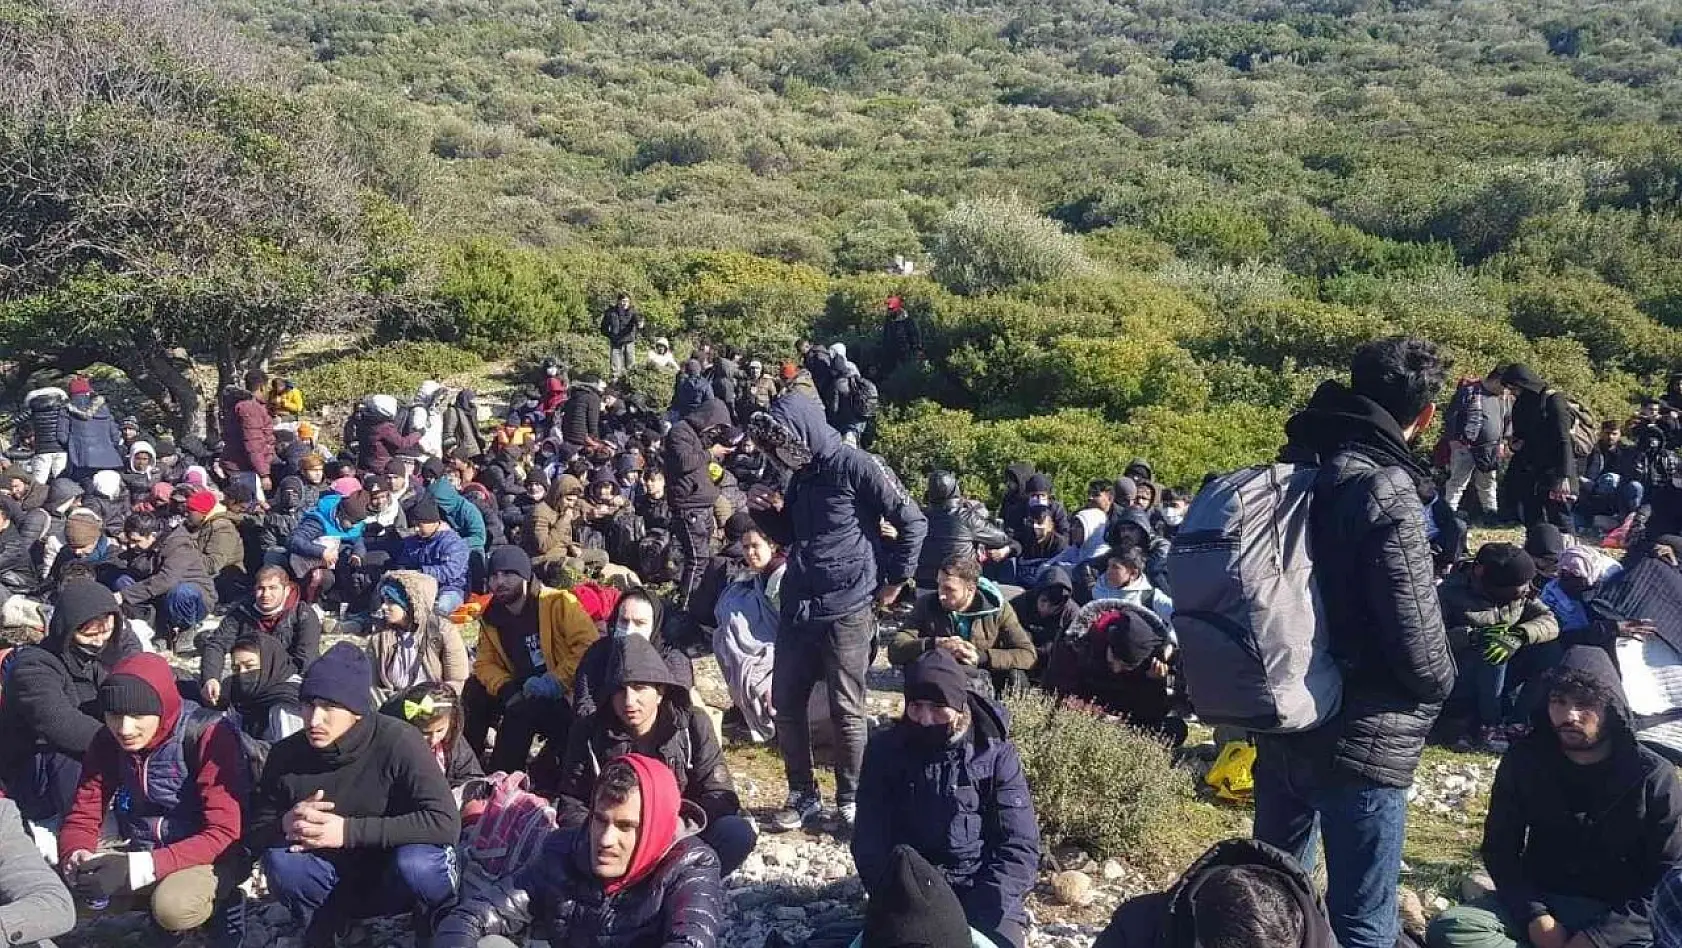 İzmir'de jandarmadan göçmen kaçakçılığı operasyonu: 19 olayda 343 göçmen yakalandı